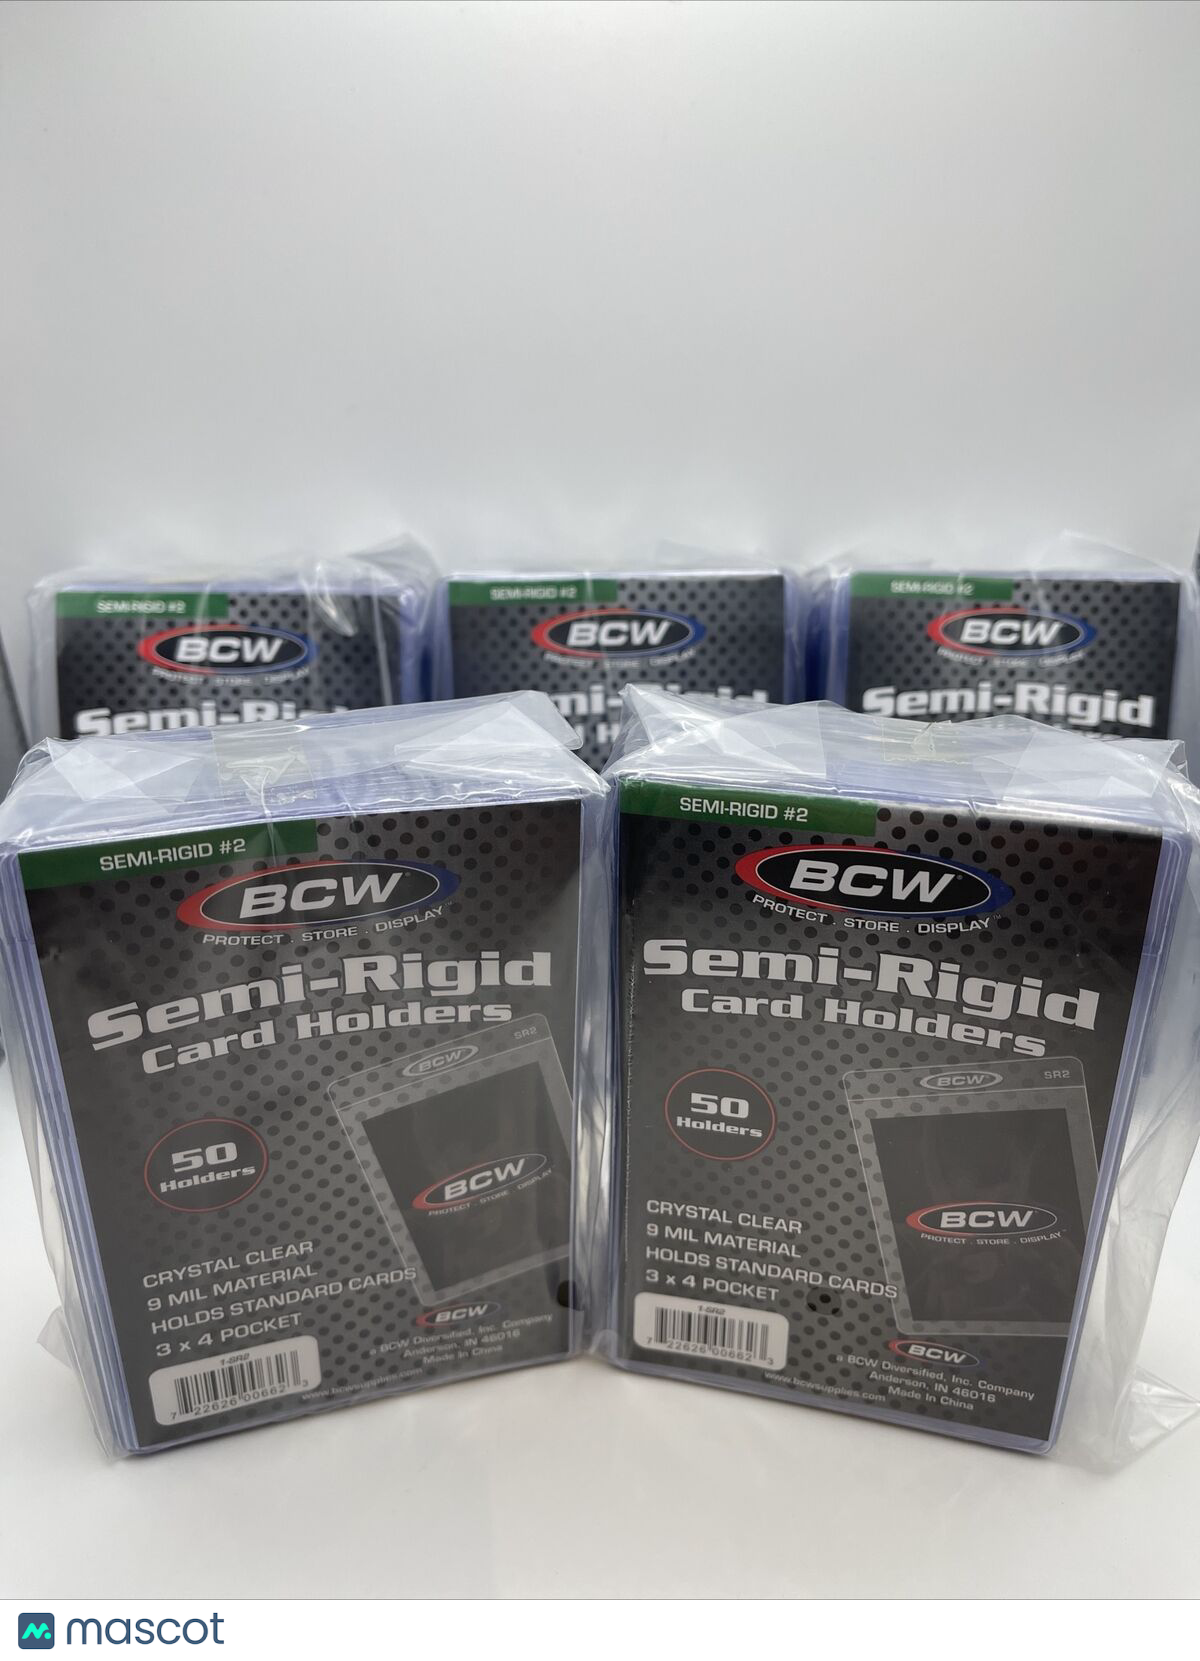 BCW Semi-Rigid Card Holders #2 5 Packs of 50 Sleeves, 250 Total